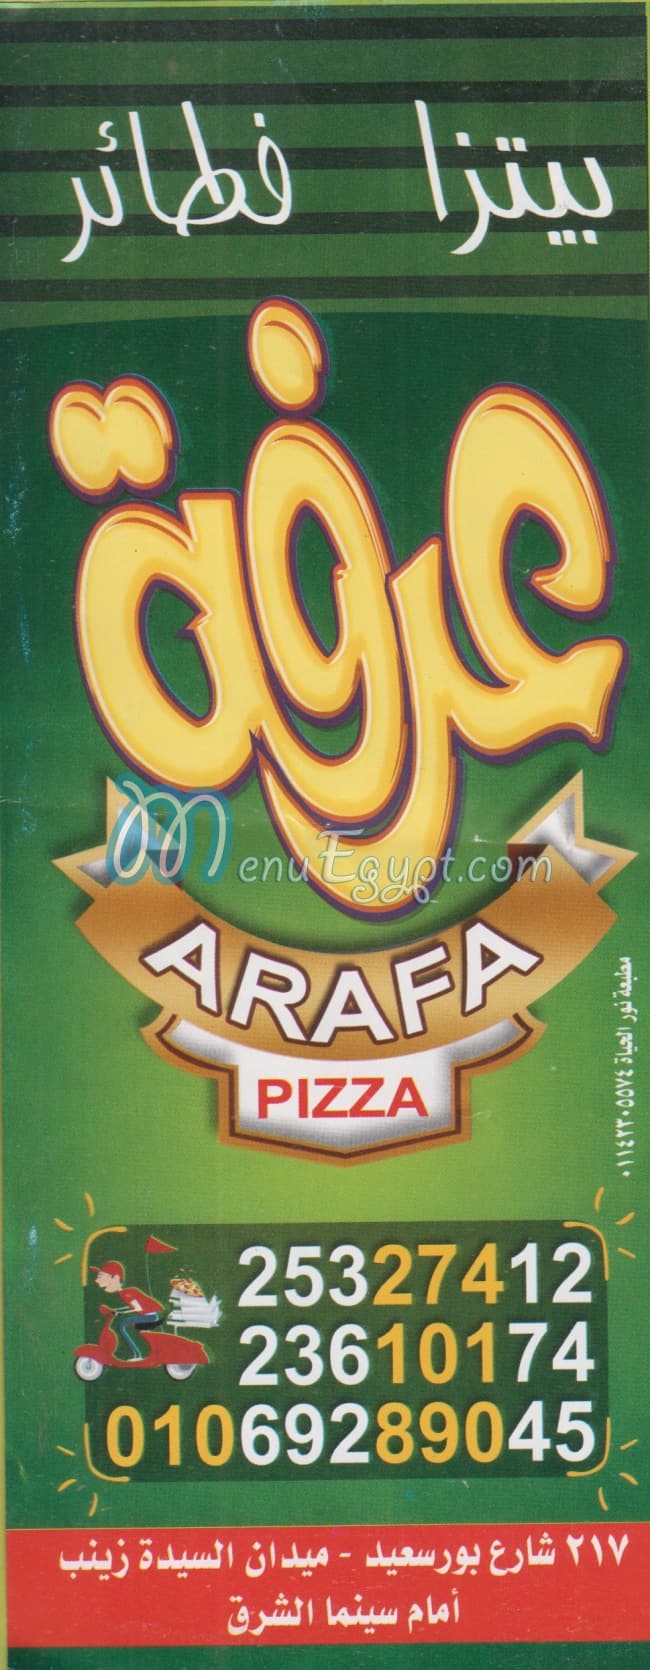 Arafa menu